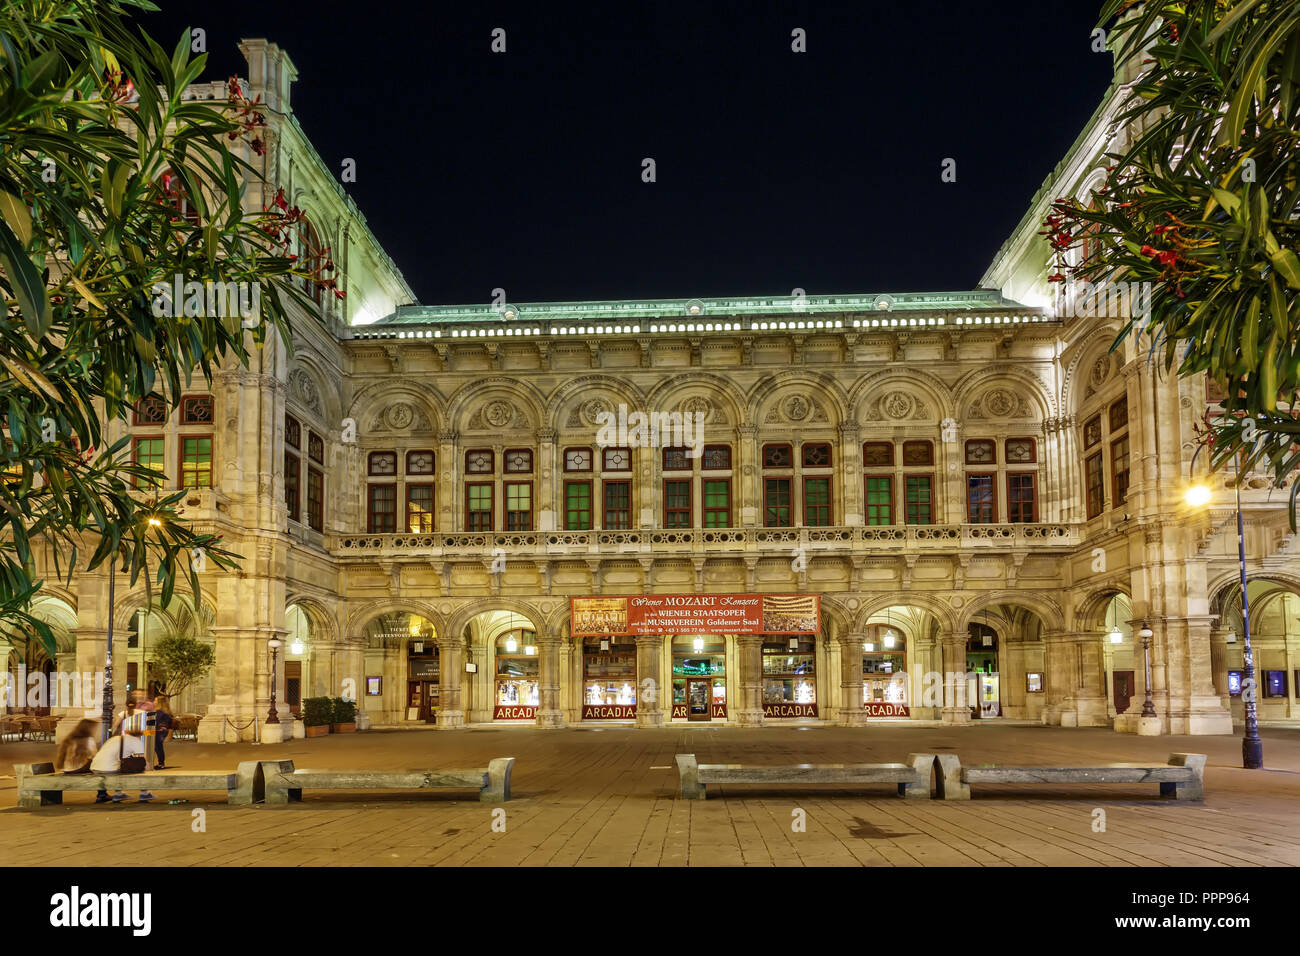 Wien, Österreich - 12. Juli 2015: Die berühmten Wiener Staatsoper. Nachtansicht Stockfoto